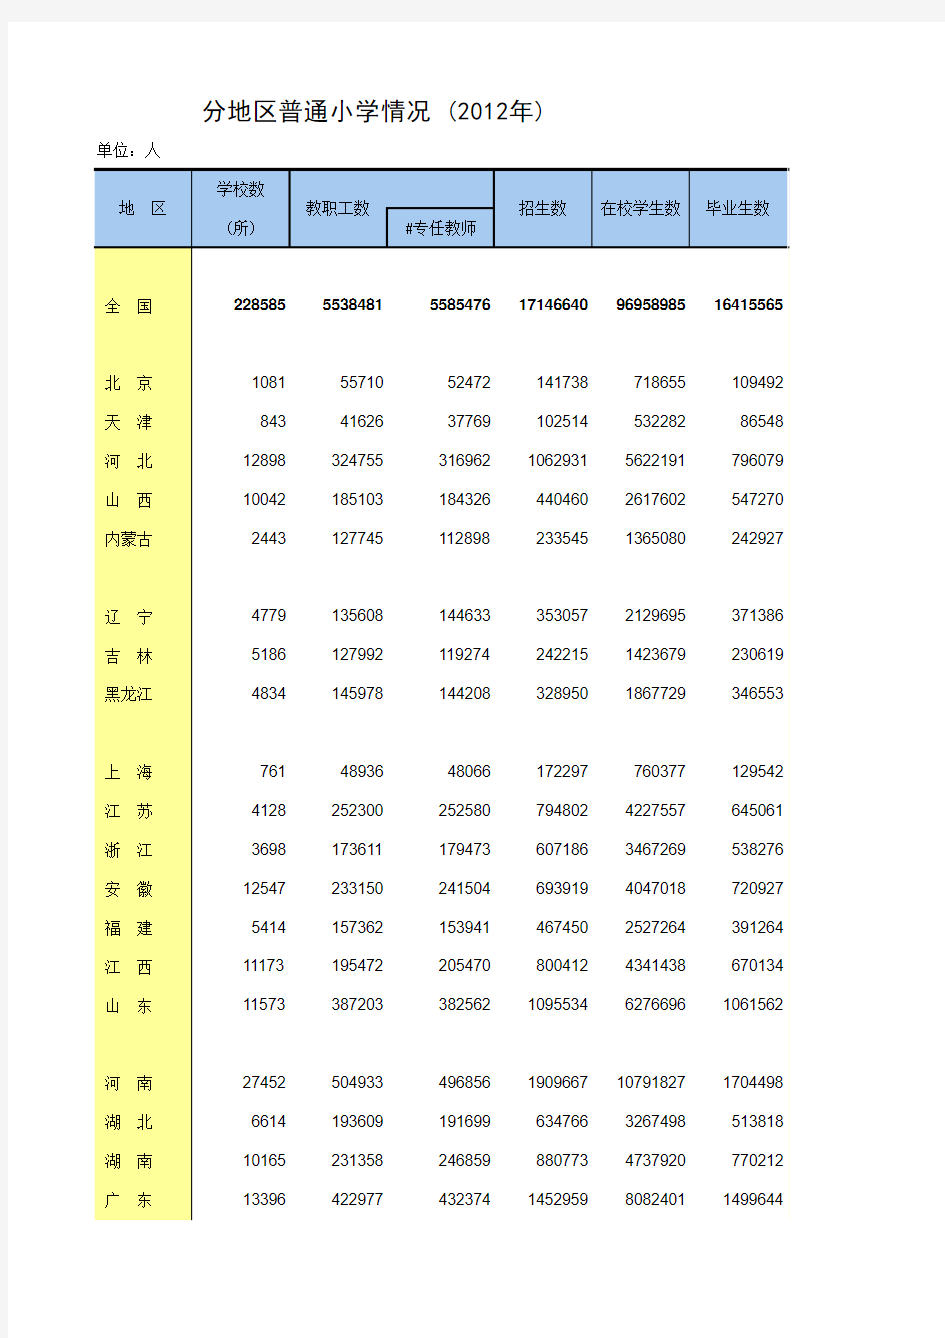 中国统计年鉴2013分地区普通小学情况 (2012年)